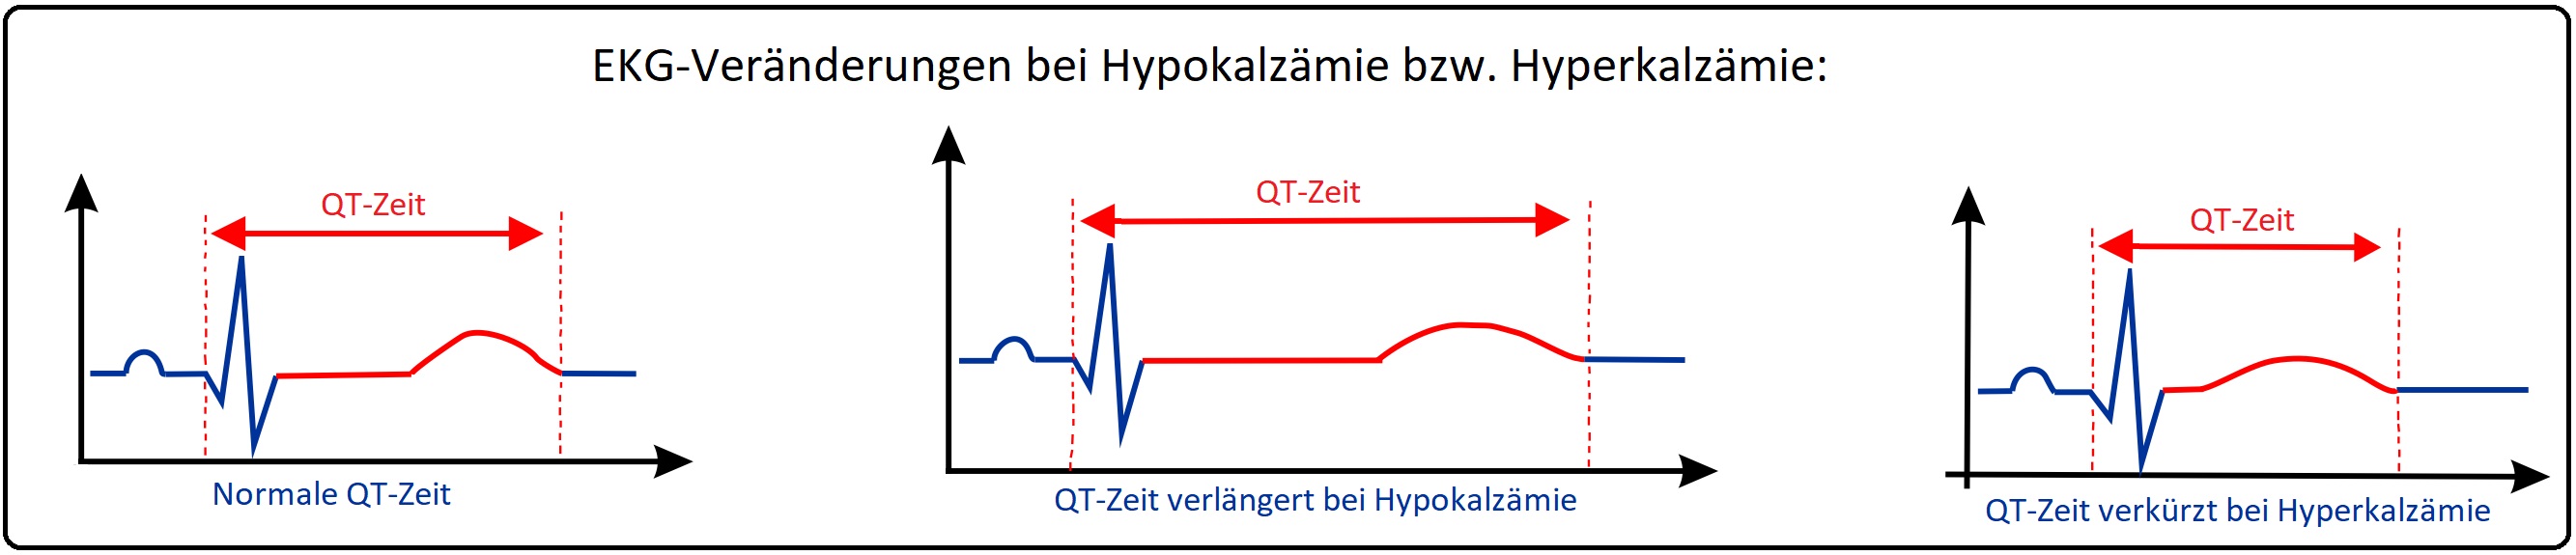 835 EKG Veränderungen bei Hypokalzämie bzw Hyperkalzämie